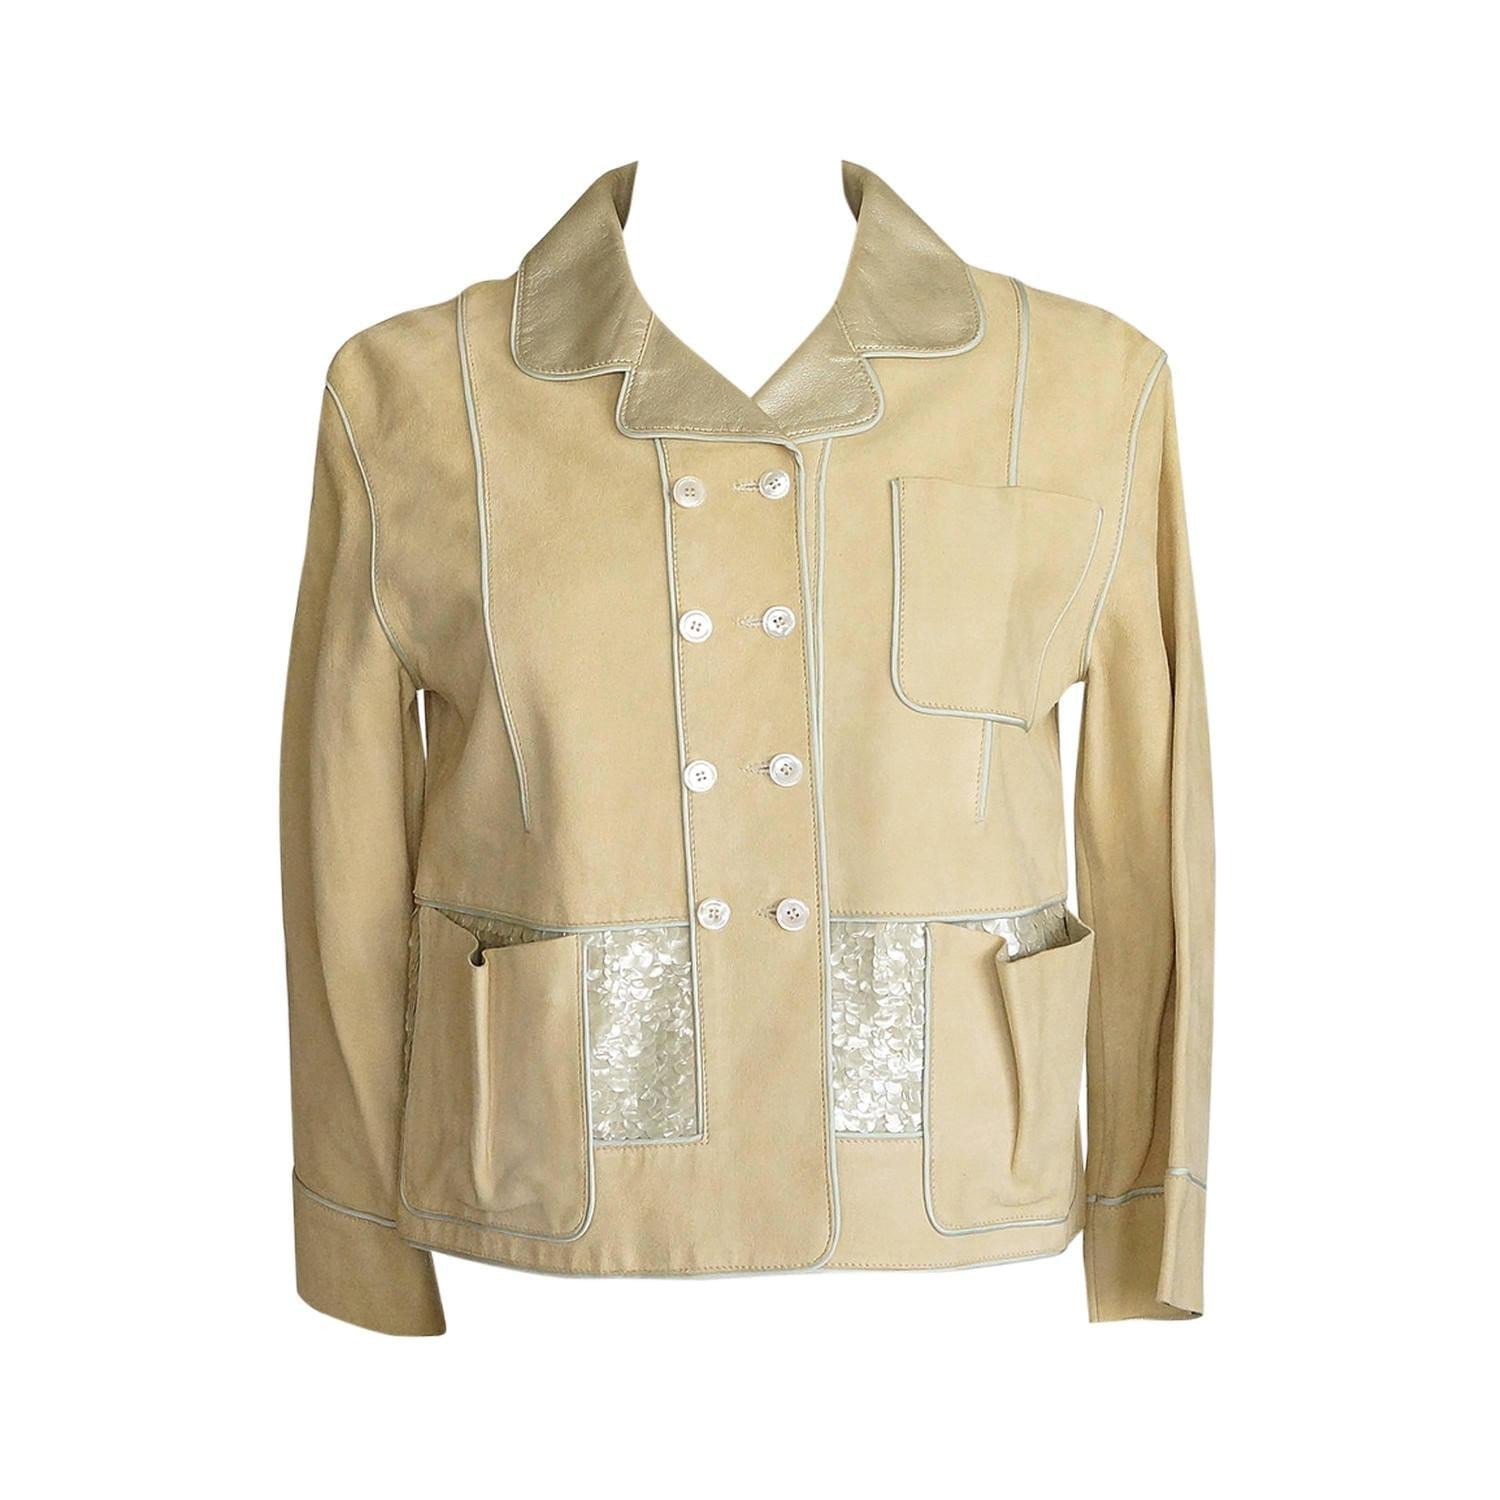 Louis Vuitton Jacket Adorned Suede Paillettes Gold Leather 34 / 4 Do Peek